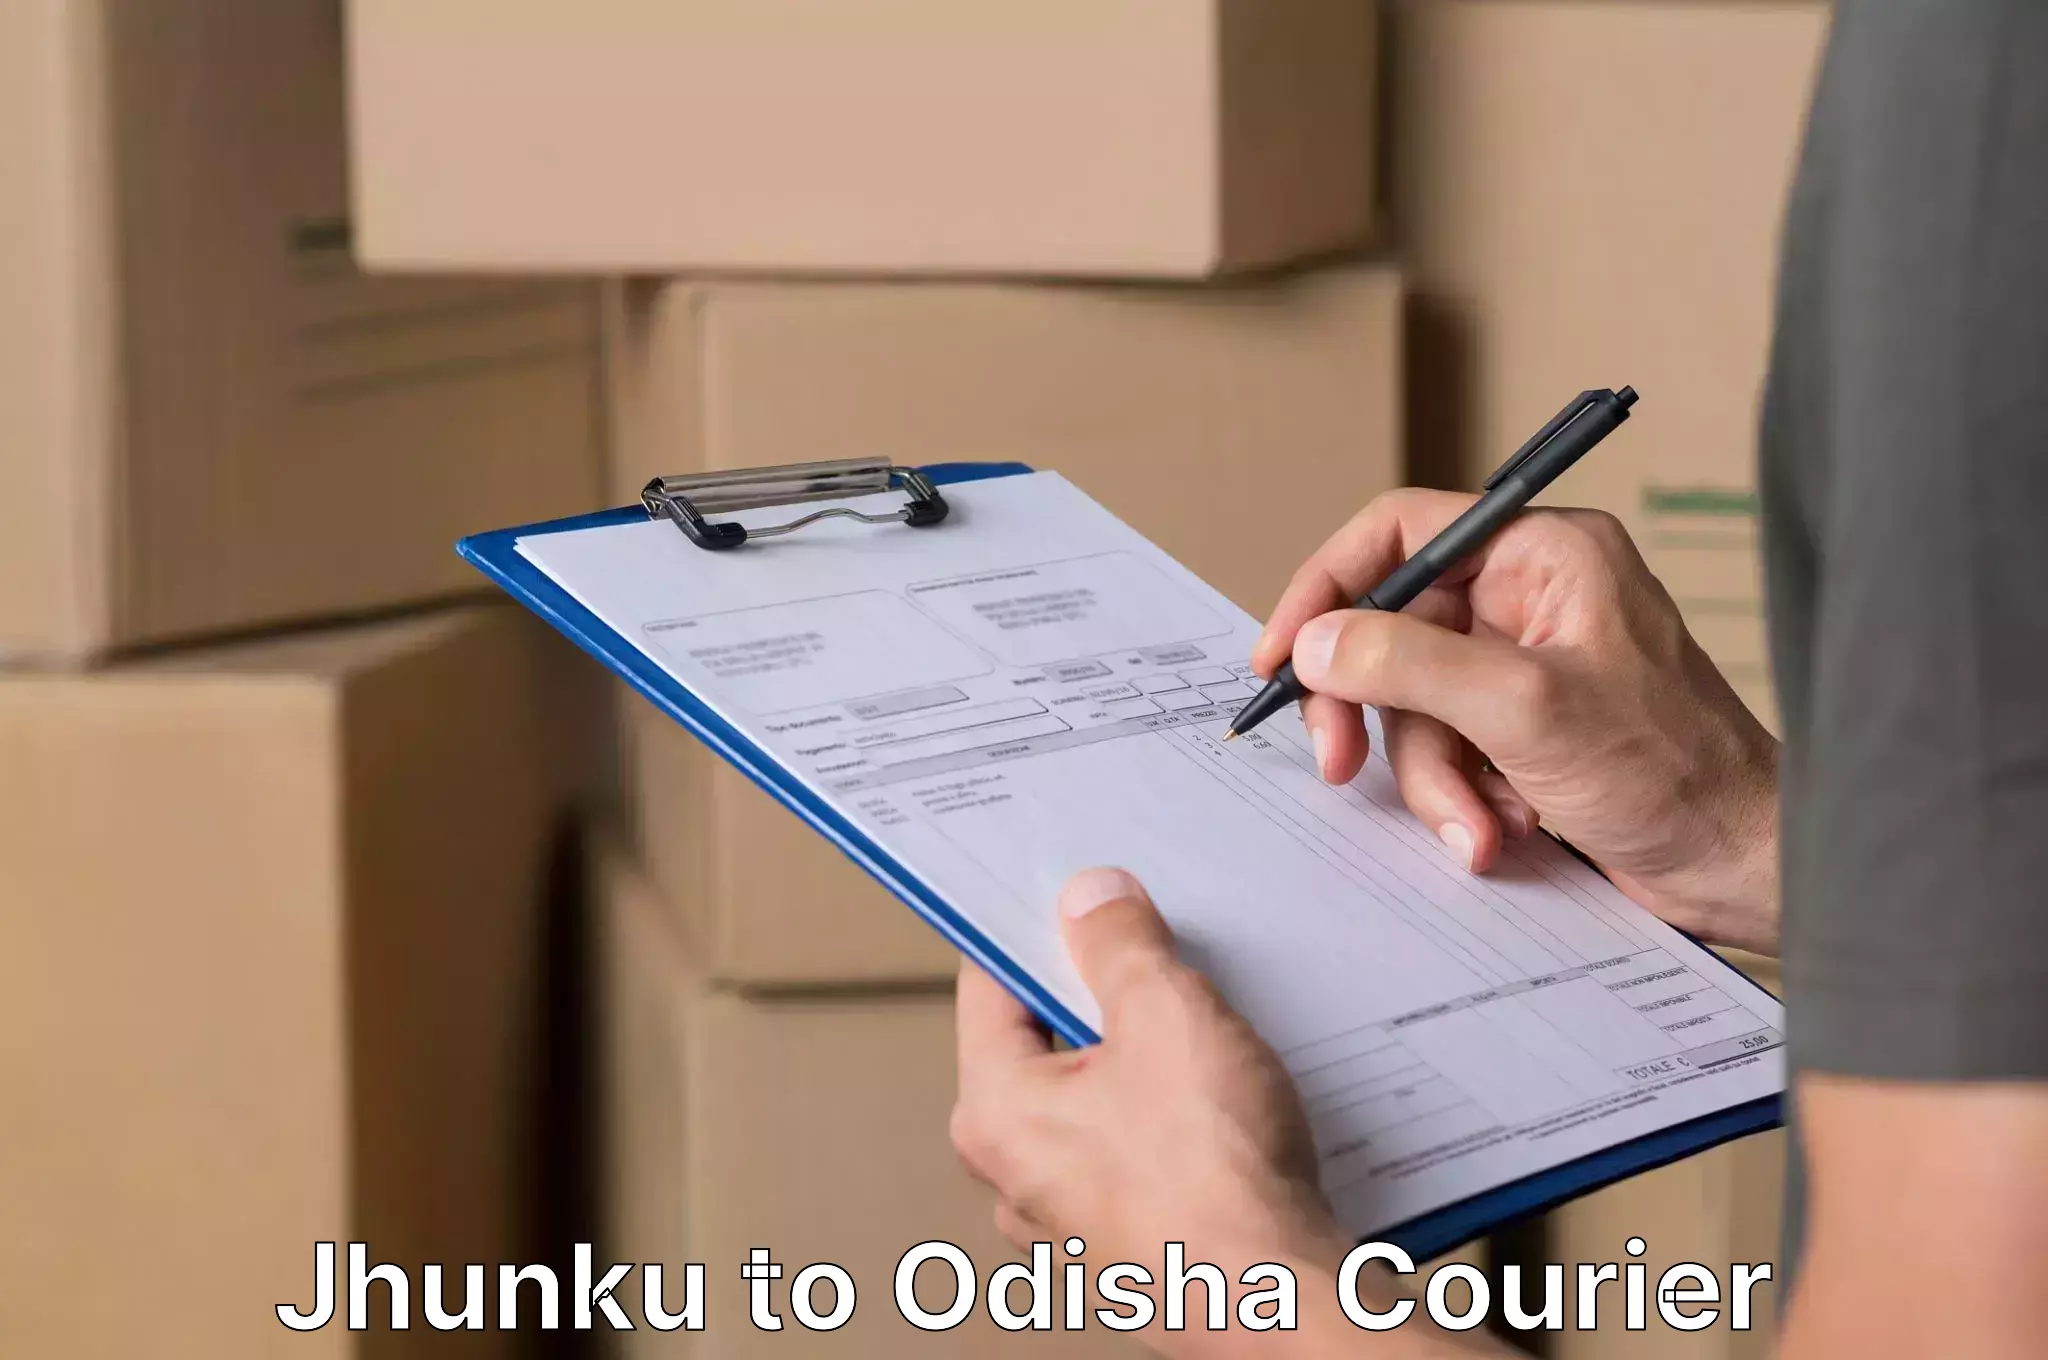 Personalized furniture moving Jhunku to Odisha